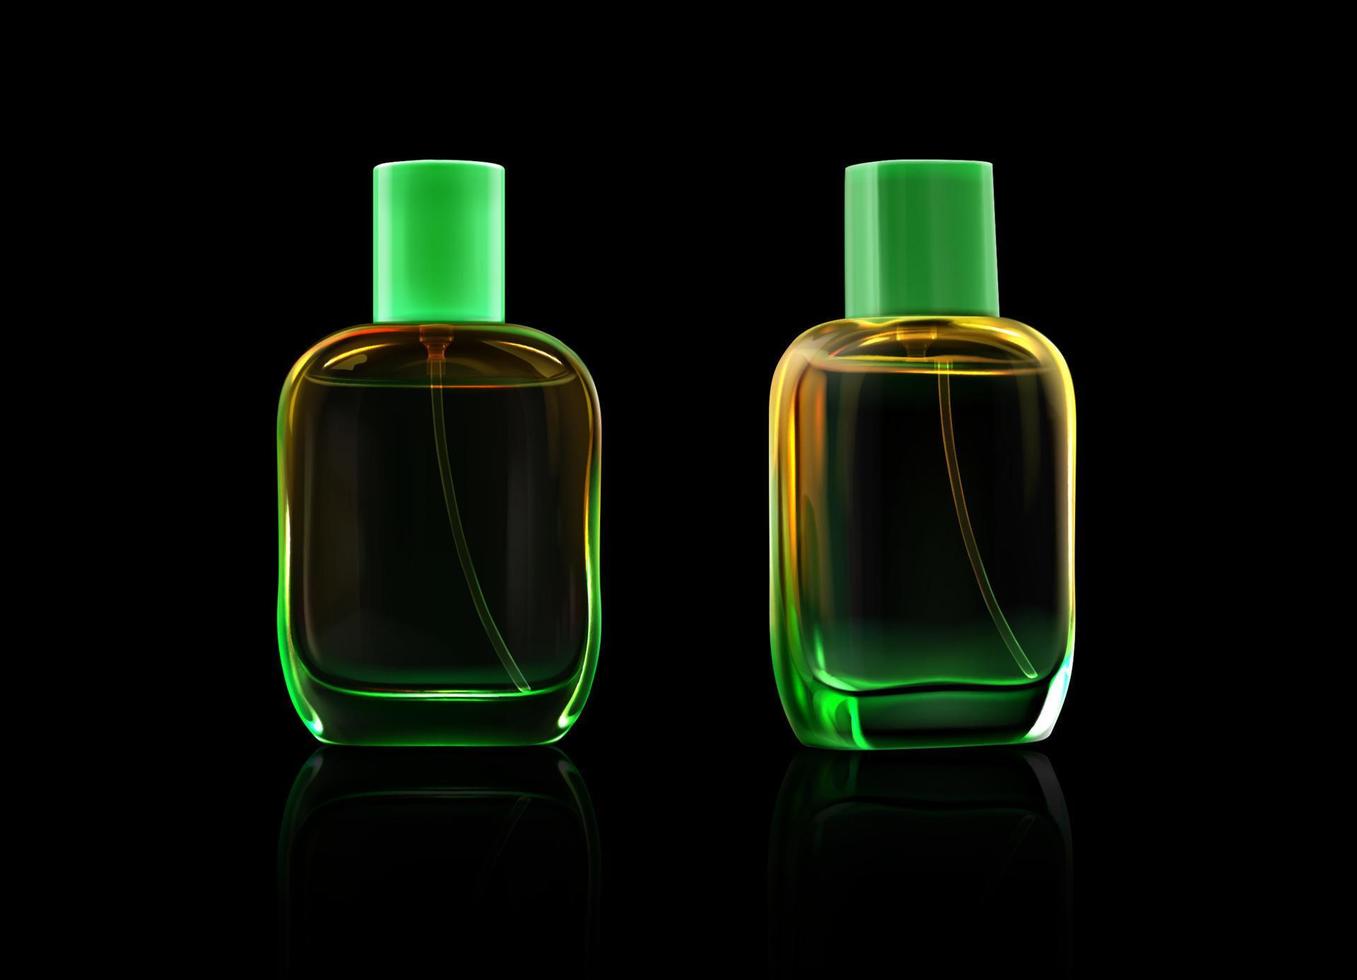 Glasflaschen für Duftstoffe, Parfüm, Kölnisch Wasser vektor